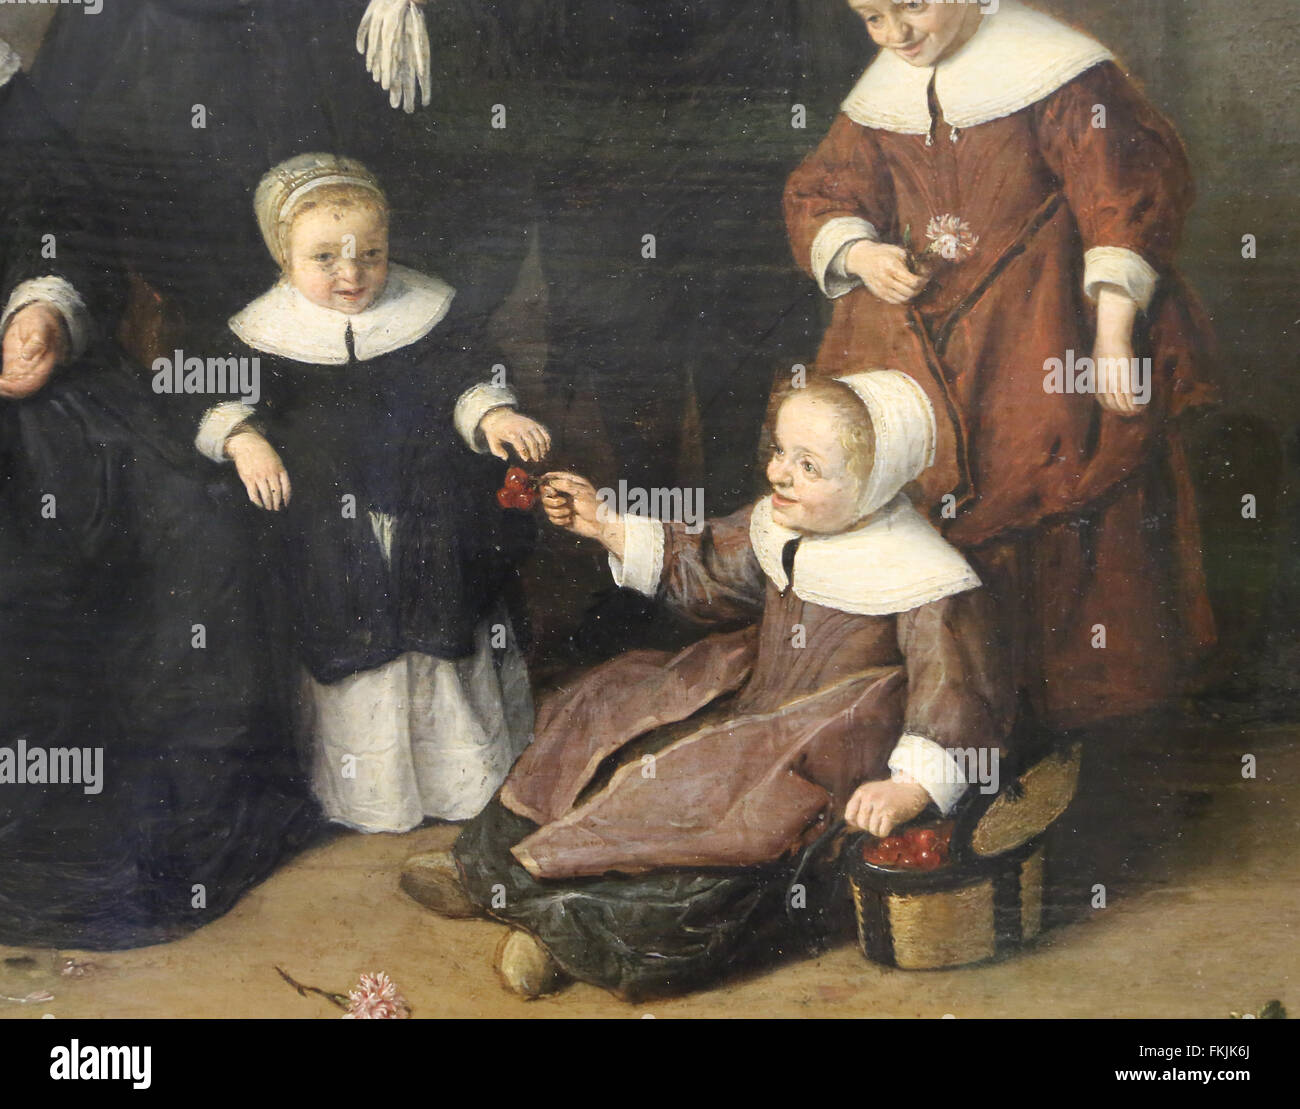 Adriaen van Ostade (1610-1685). Family portrait, 1654. Detail. Louvre Museum. Paris. France. Stock Photo